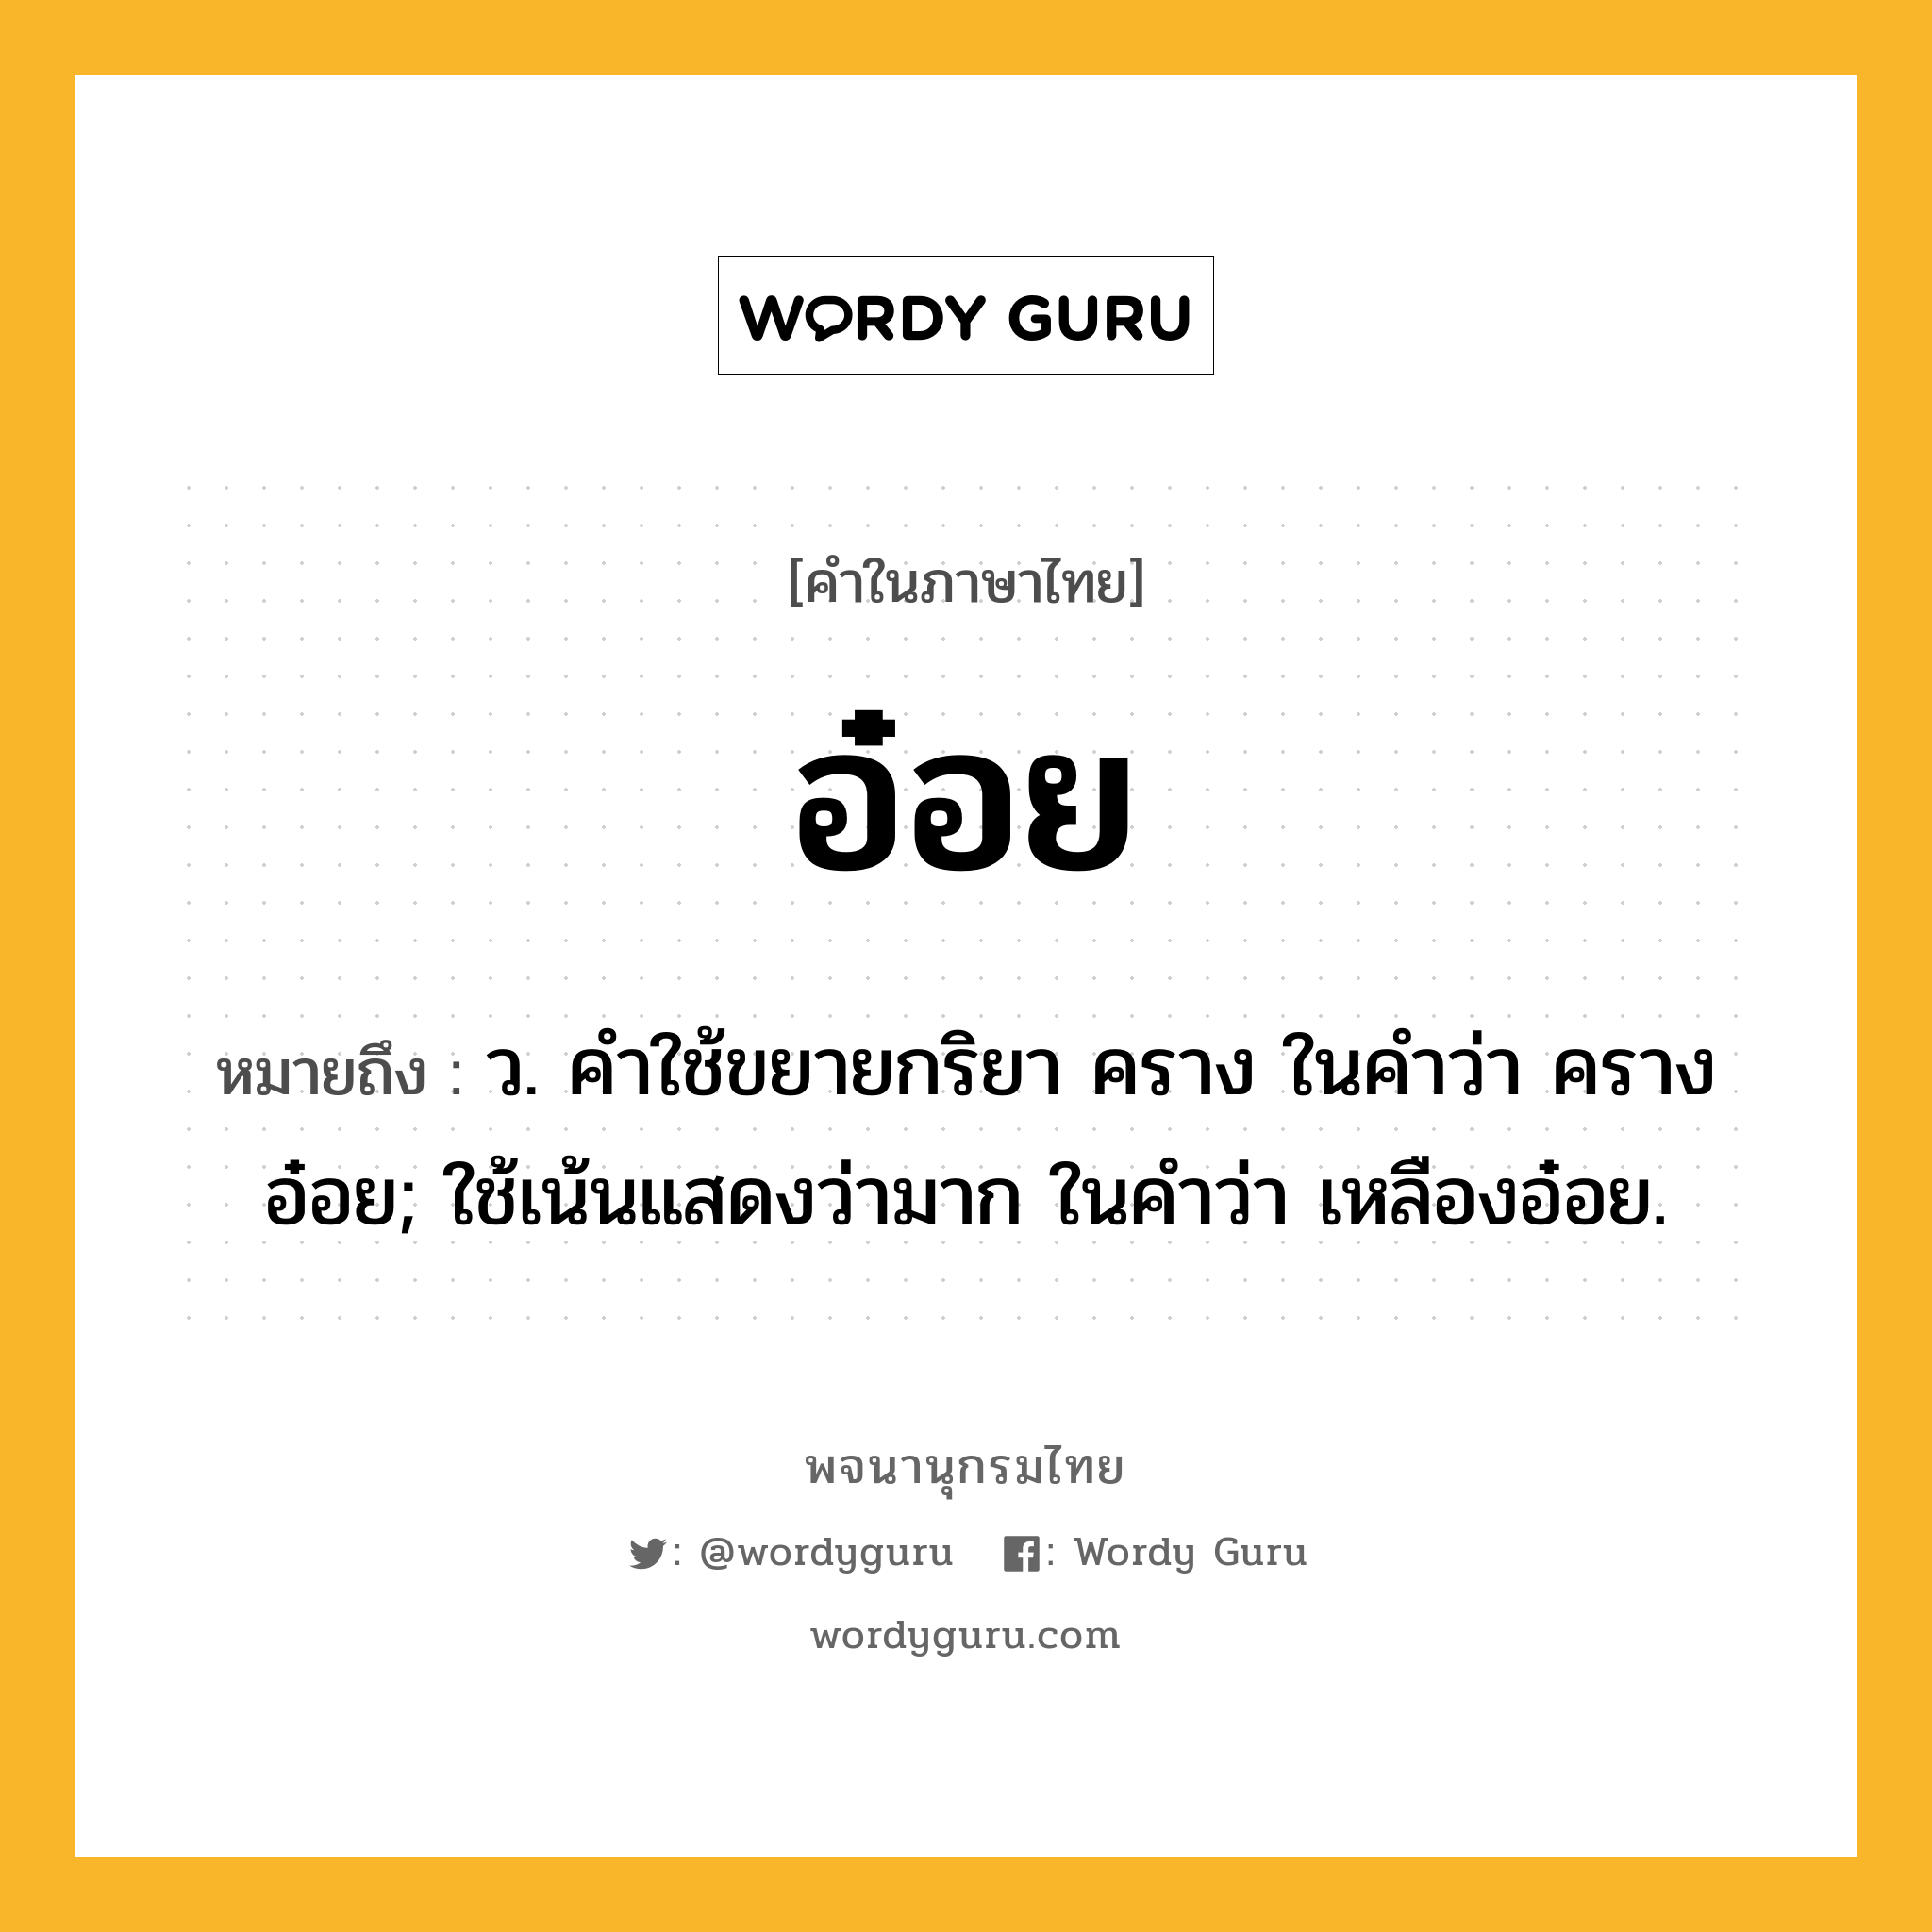 อ๋อย หมายถึงอะไร?, คำในภาษาไทย อ๋อย หมายถึง ว. คําใช้ขยายกริยา คราง ในคําว่า ครางอ๋อย; ใช้เน้นแสดงว่ามาก ในคําว่า เหลืองอ๋อย.